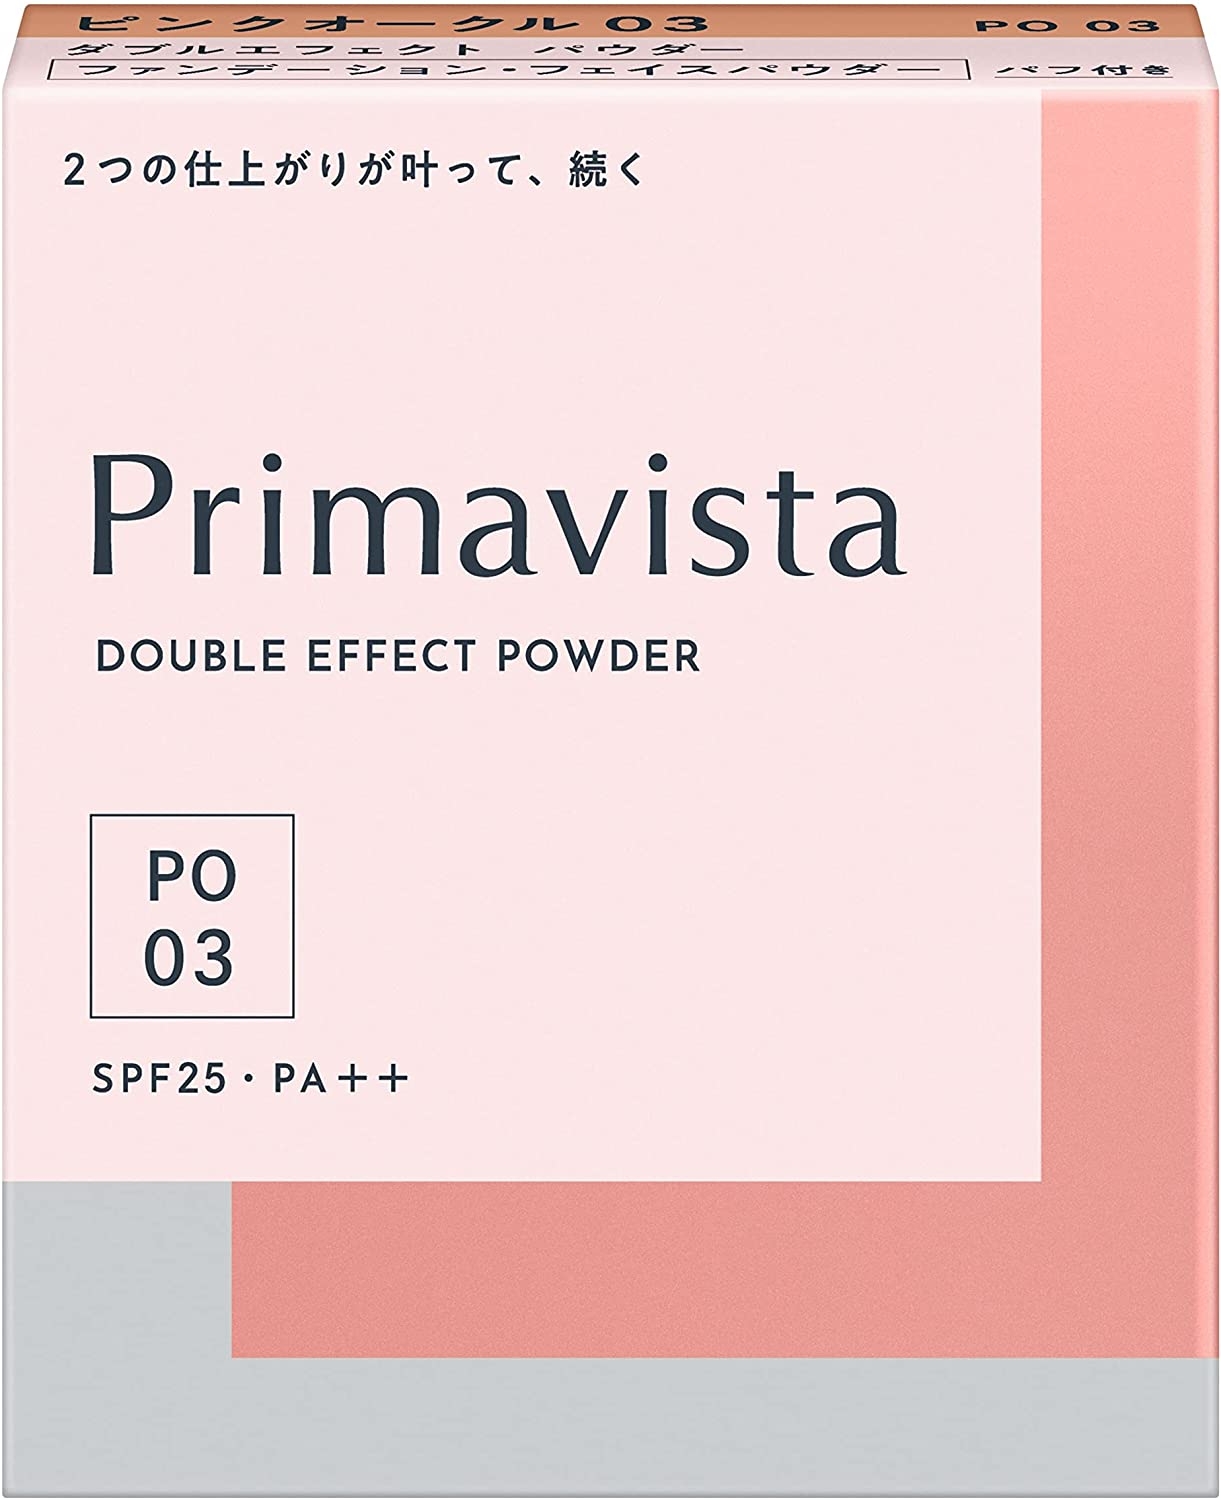 SOFINA Primavista(ソフィーナ プリマヴィスタ) ダブルエフェクト パウダーの商品画像9 